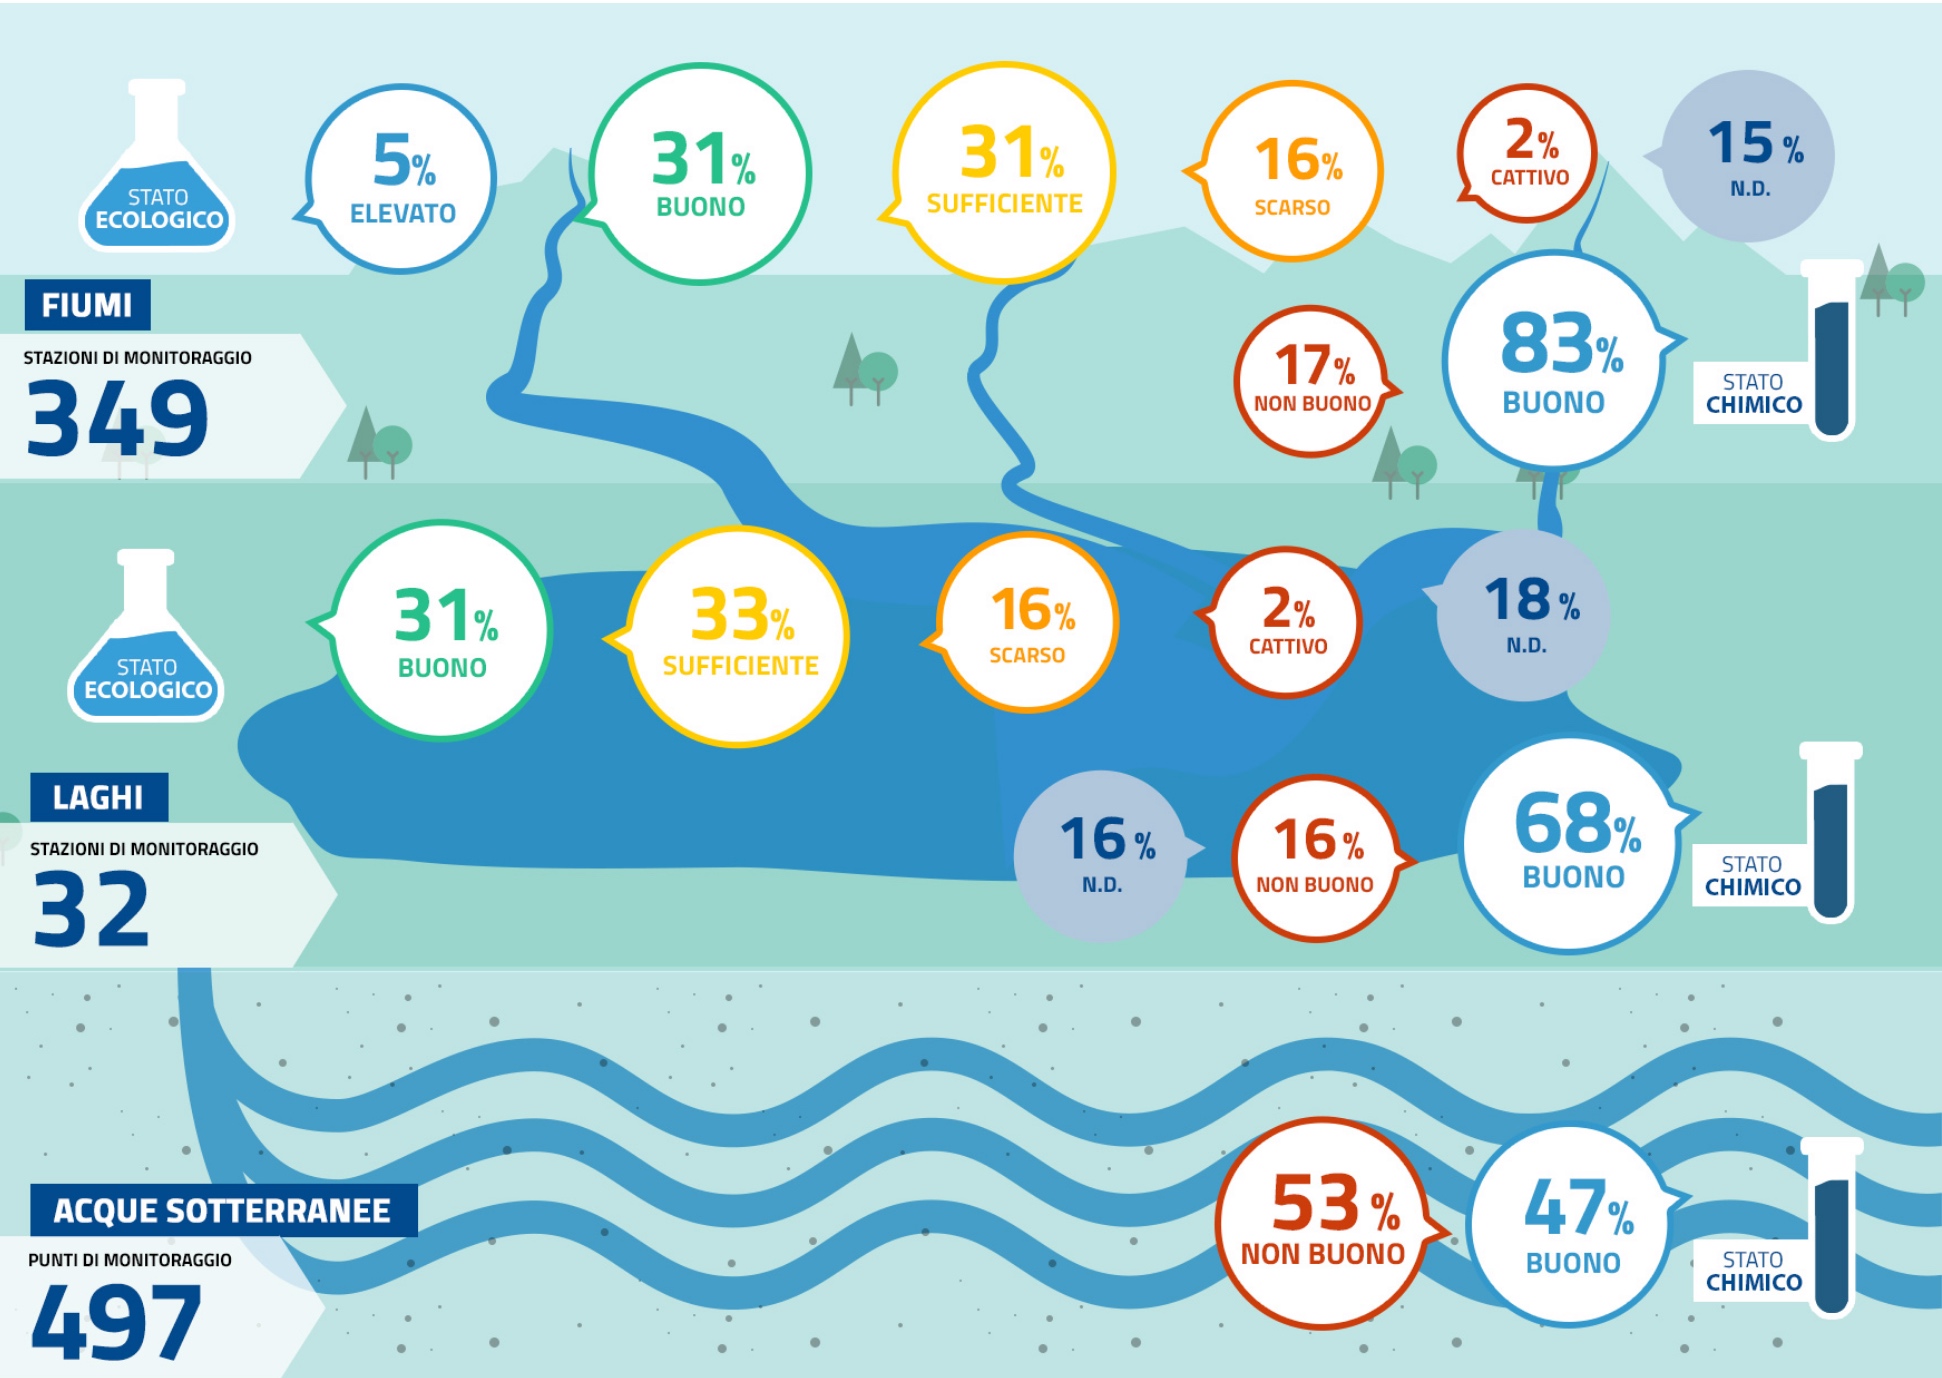 Acqua, un bene primario maltrattato dispersione e inquinamento tra i problemi In Lombardia il 53% dell’acqua è “Non buono”